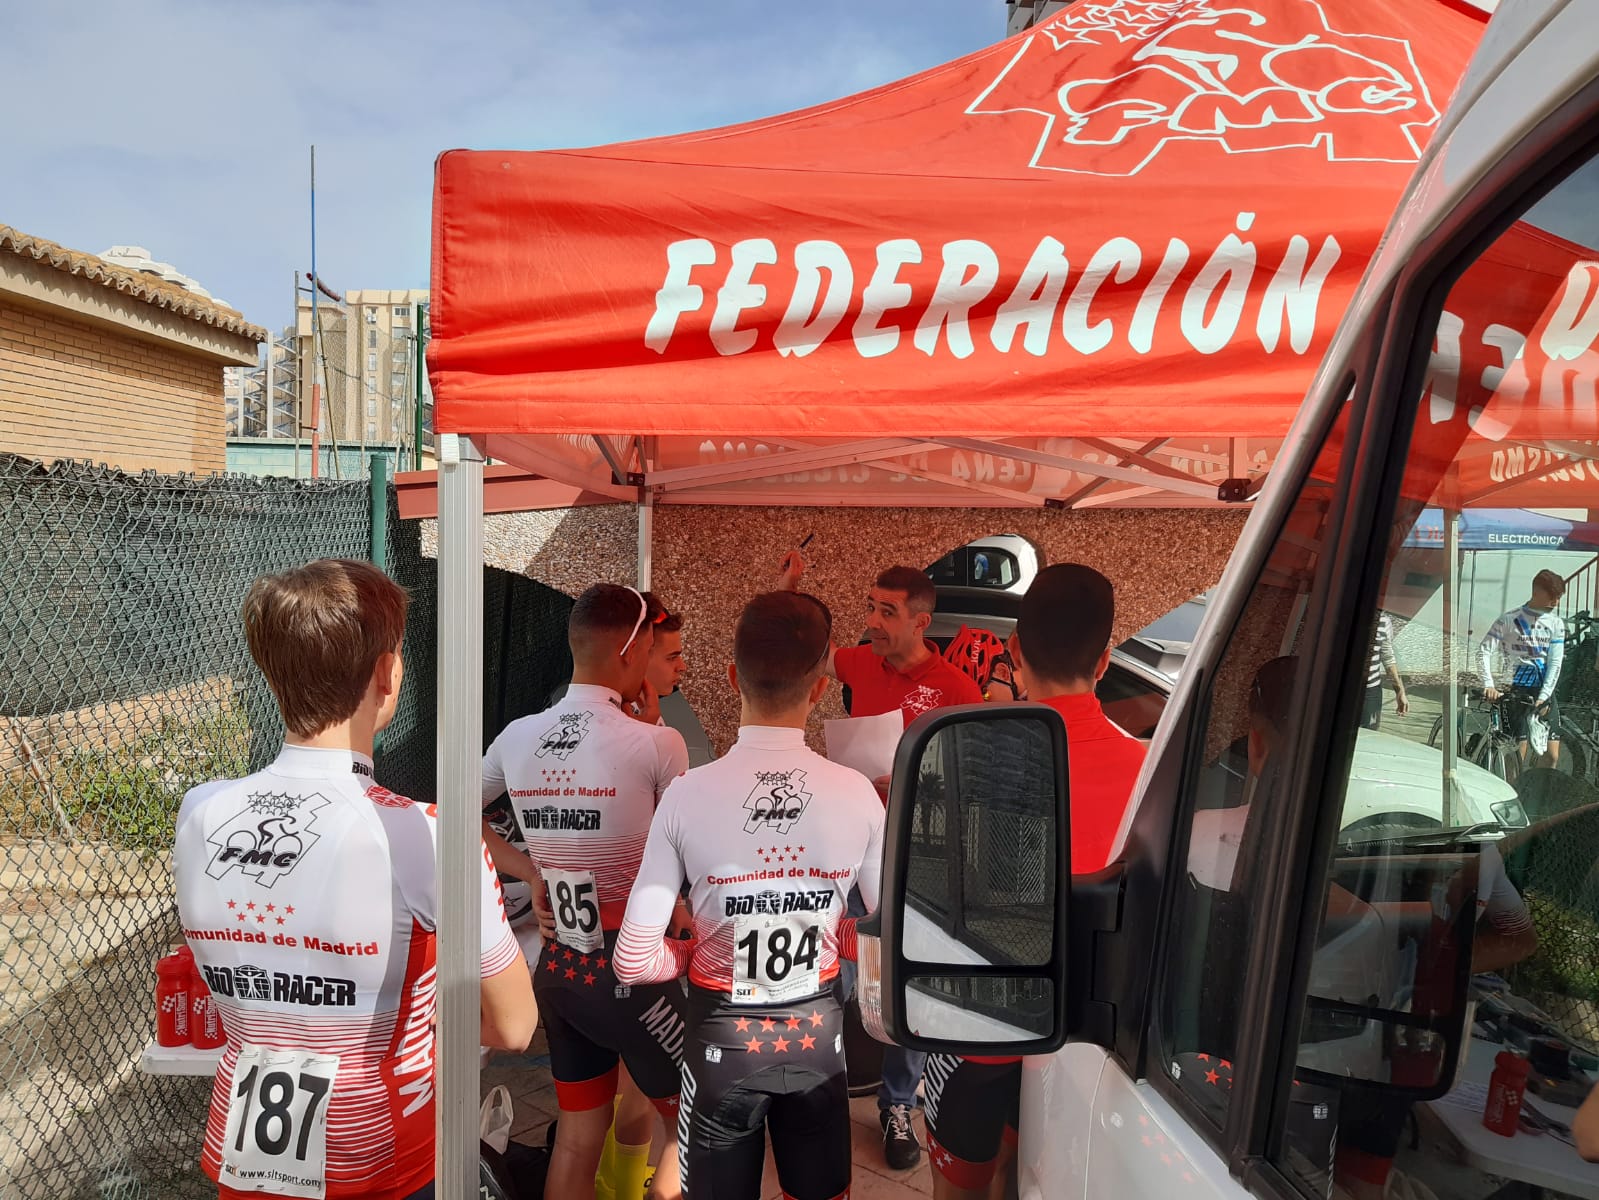 Gran papel de la Selección Madrileña Cadete masculina en la Vuelta a Gandía